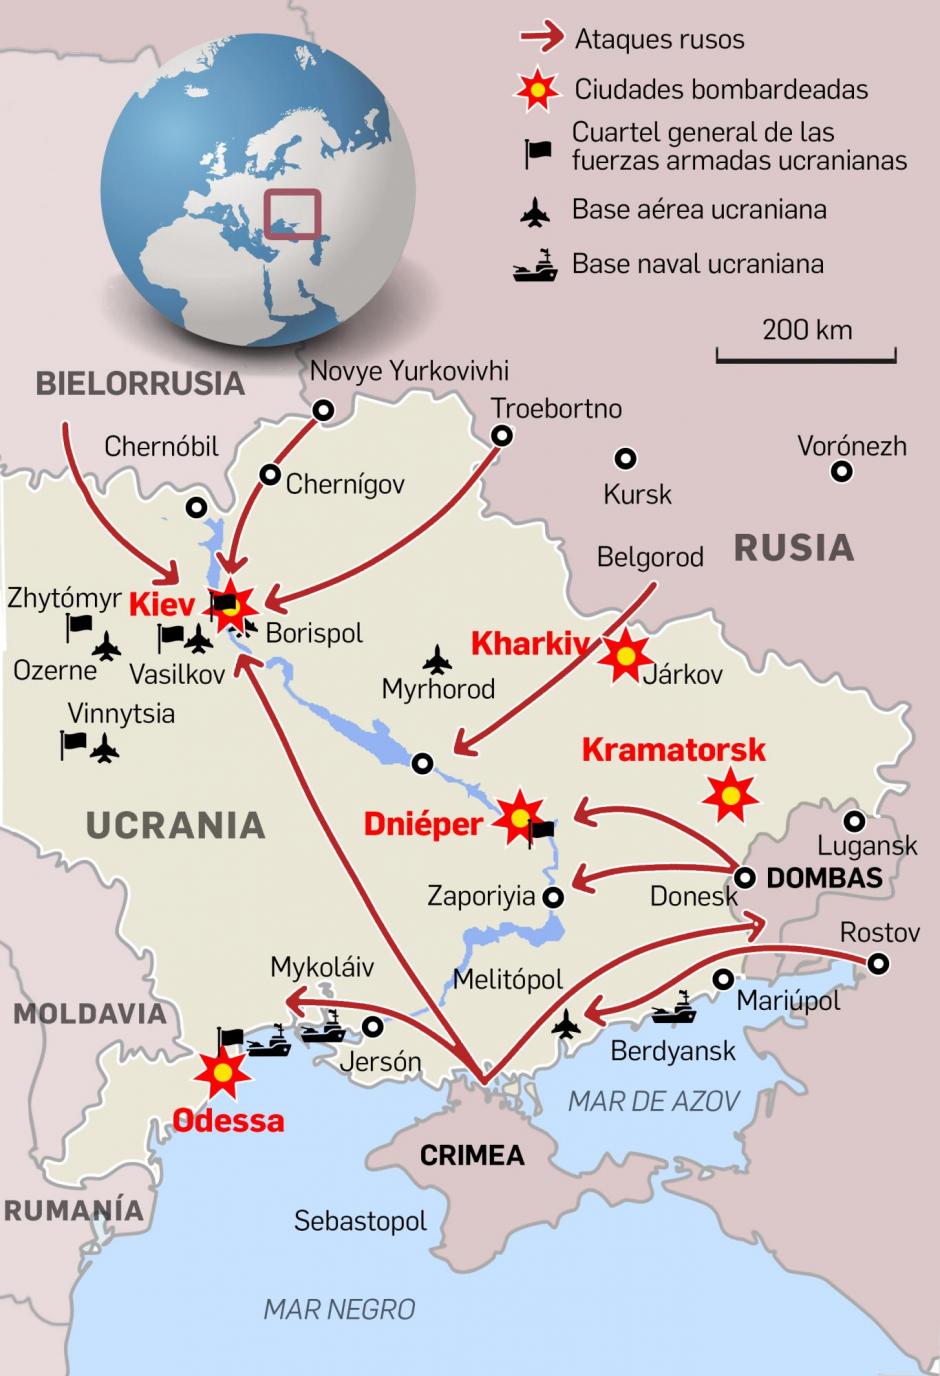 Mapa del ataque ruso a Ucrania